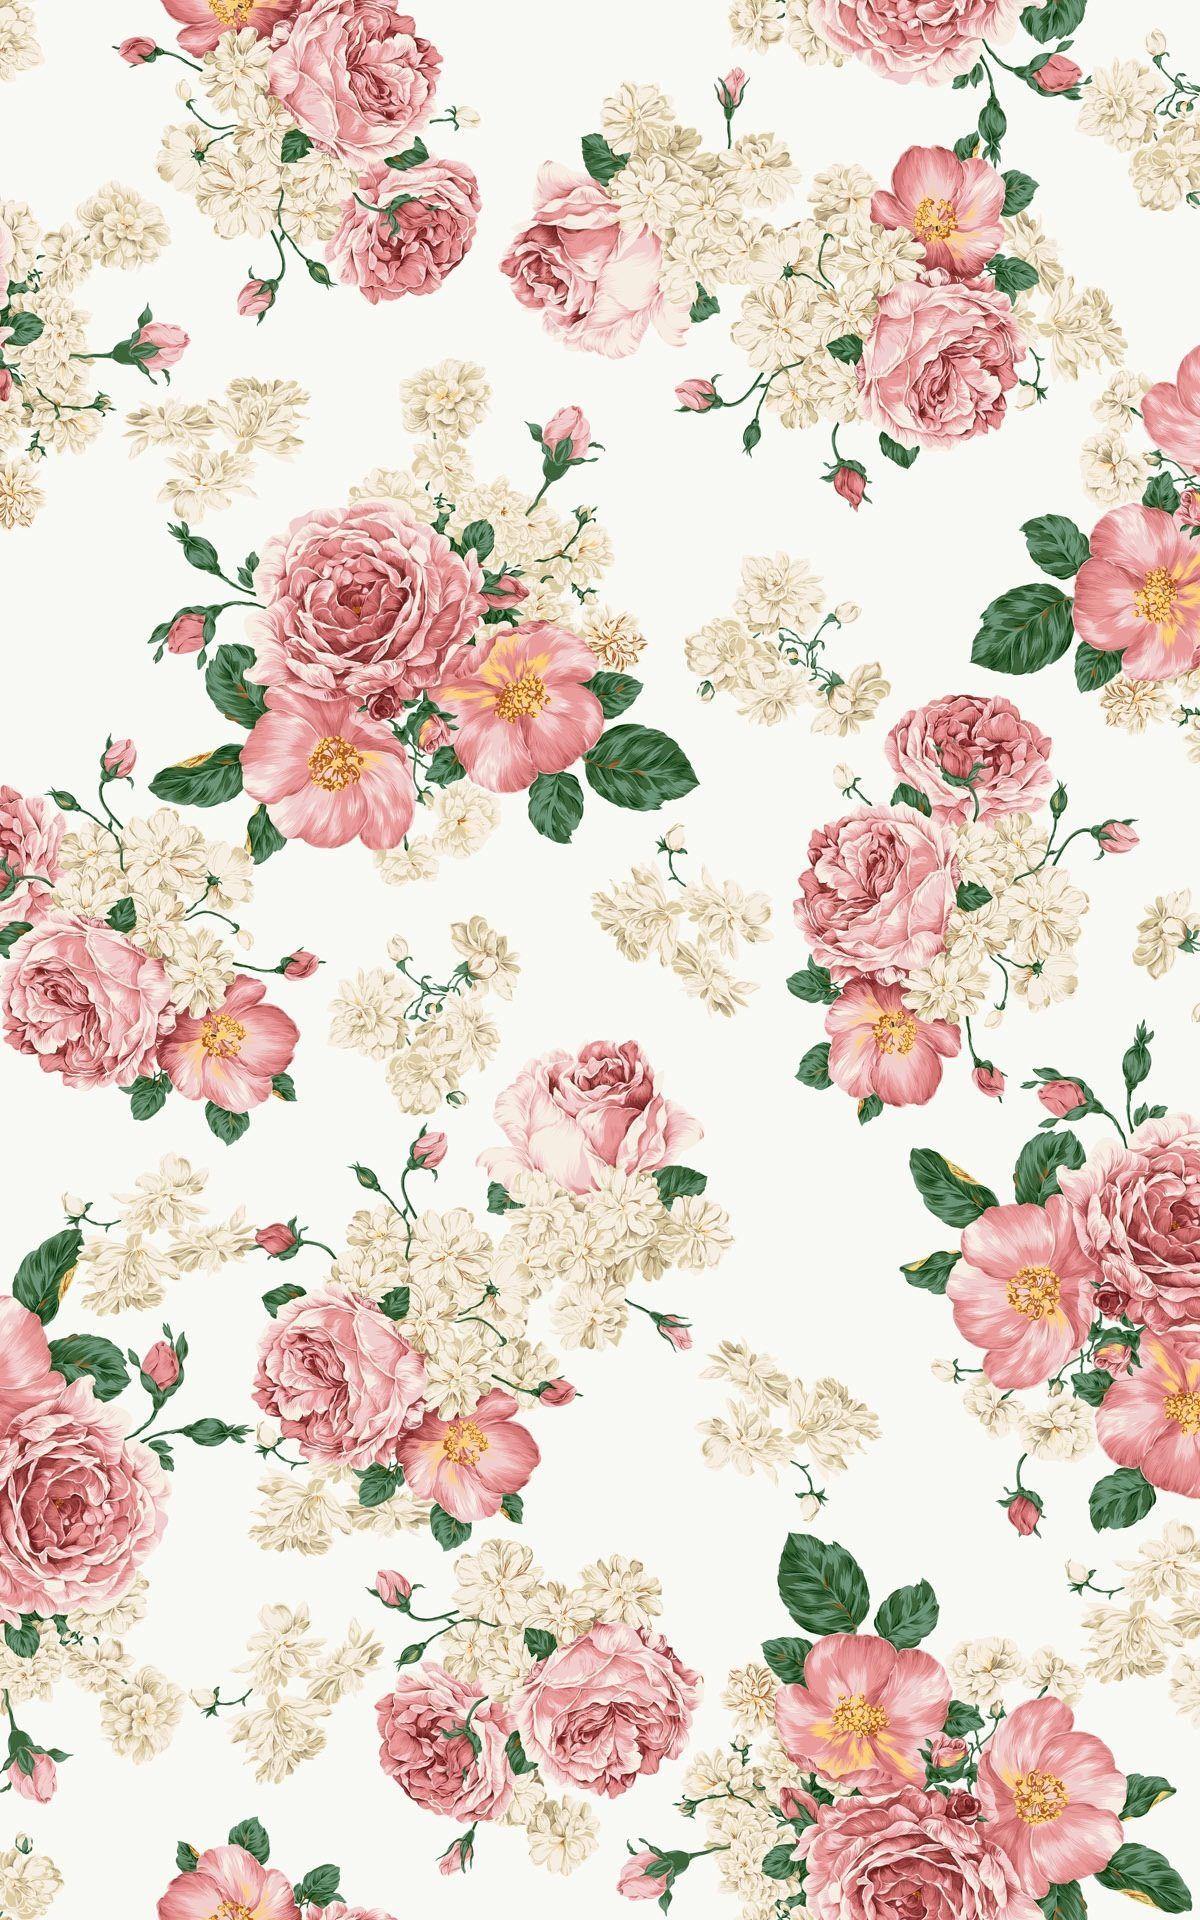 High Res Vintage Pink Flower Wallpaper. Floral wallpaper iphone, Vintage floral wallpaper, Vintage flowers wallpaper